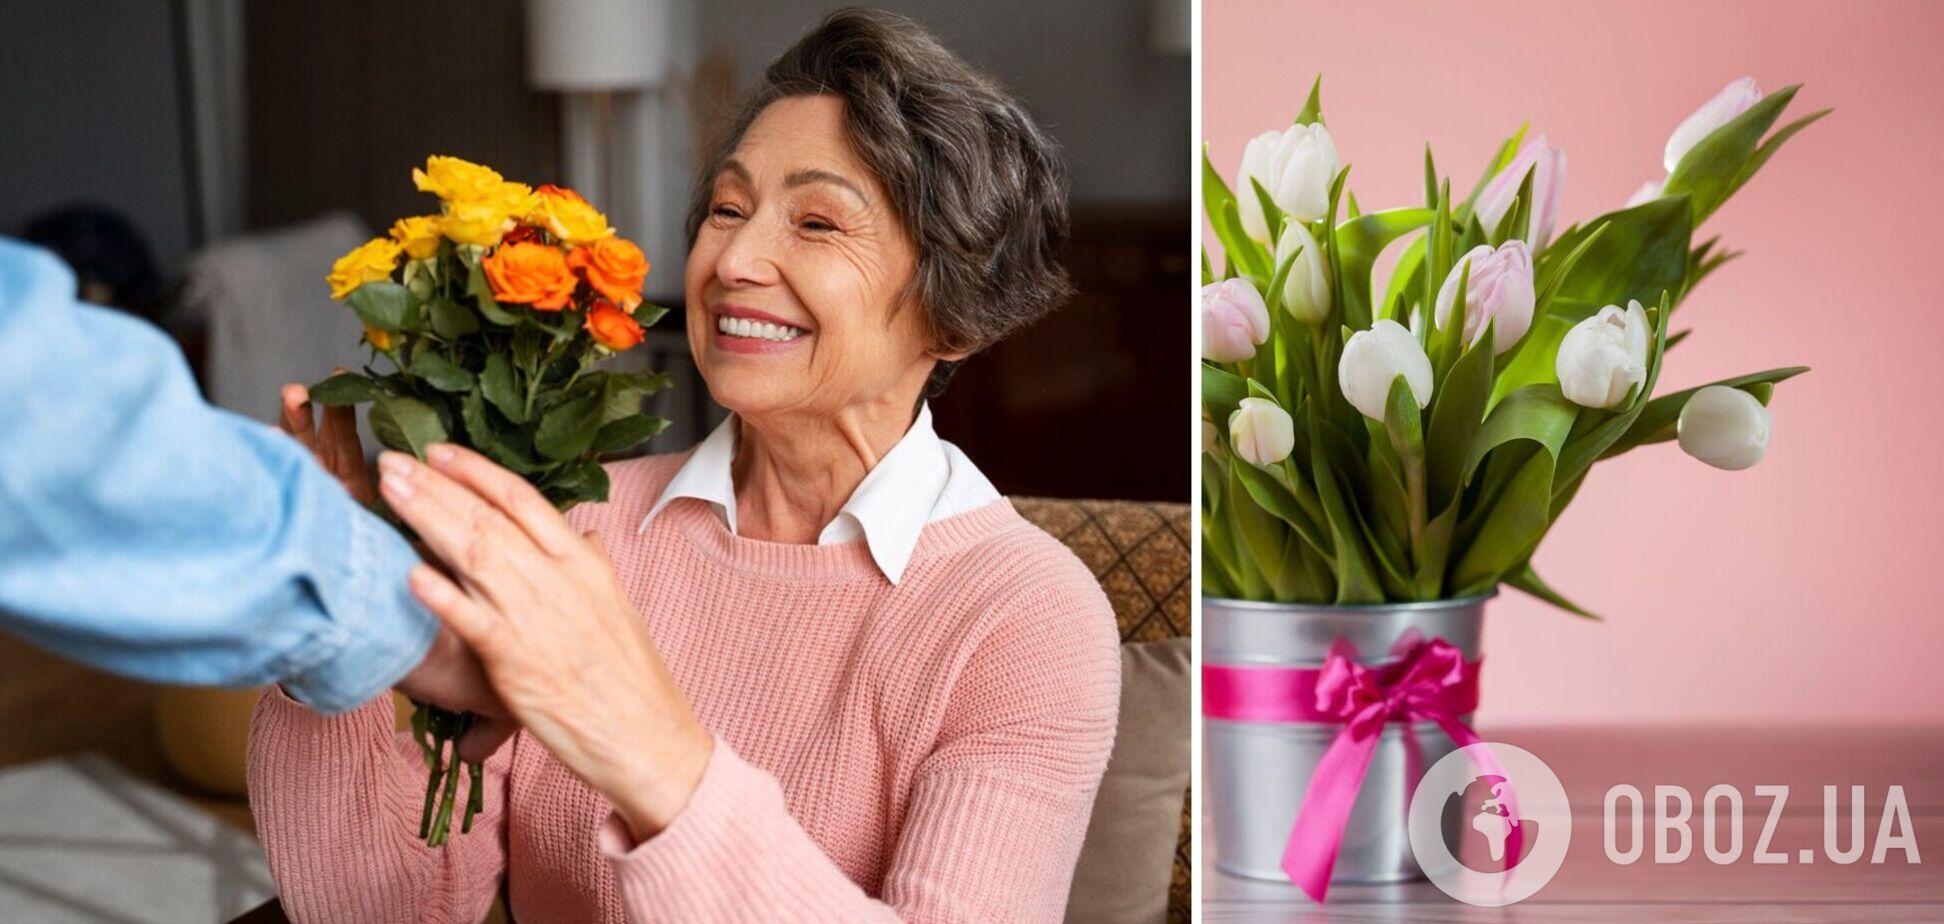 Какие цветы подарить любимой, маме, сестре на праздник весны: самые удачные букеты